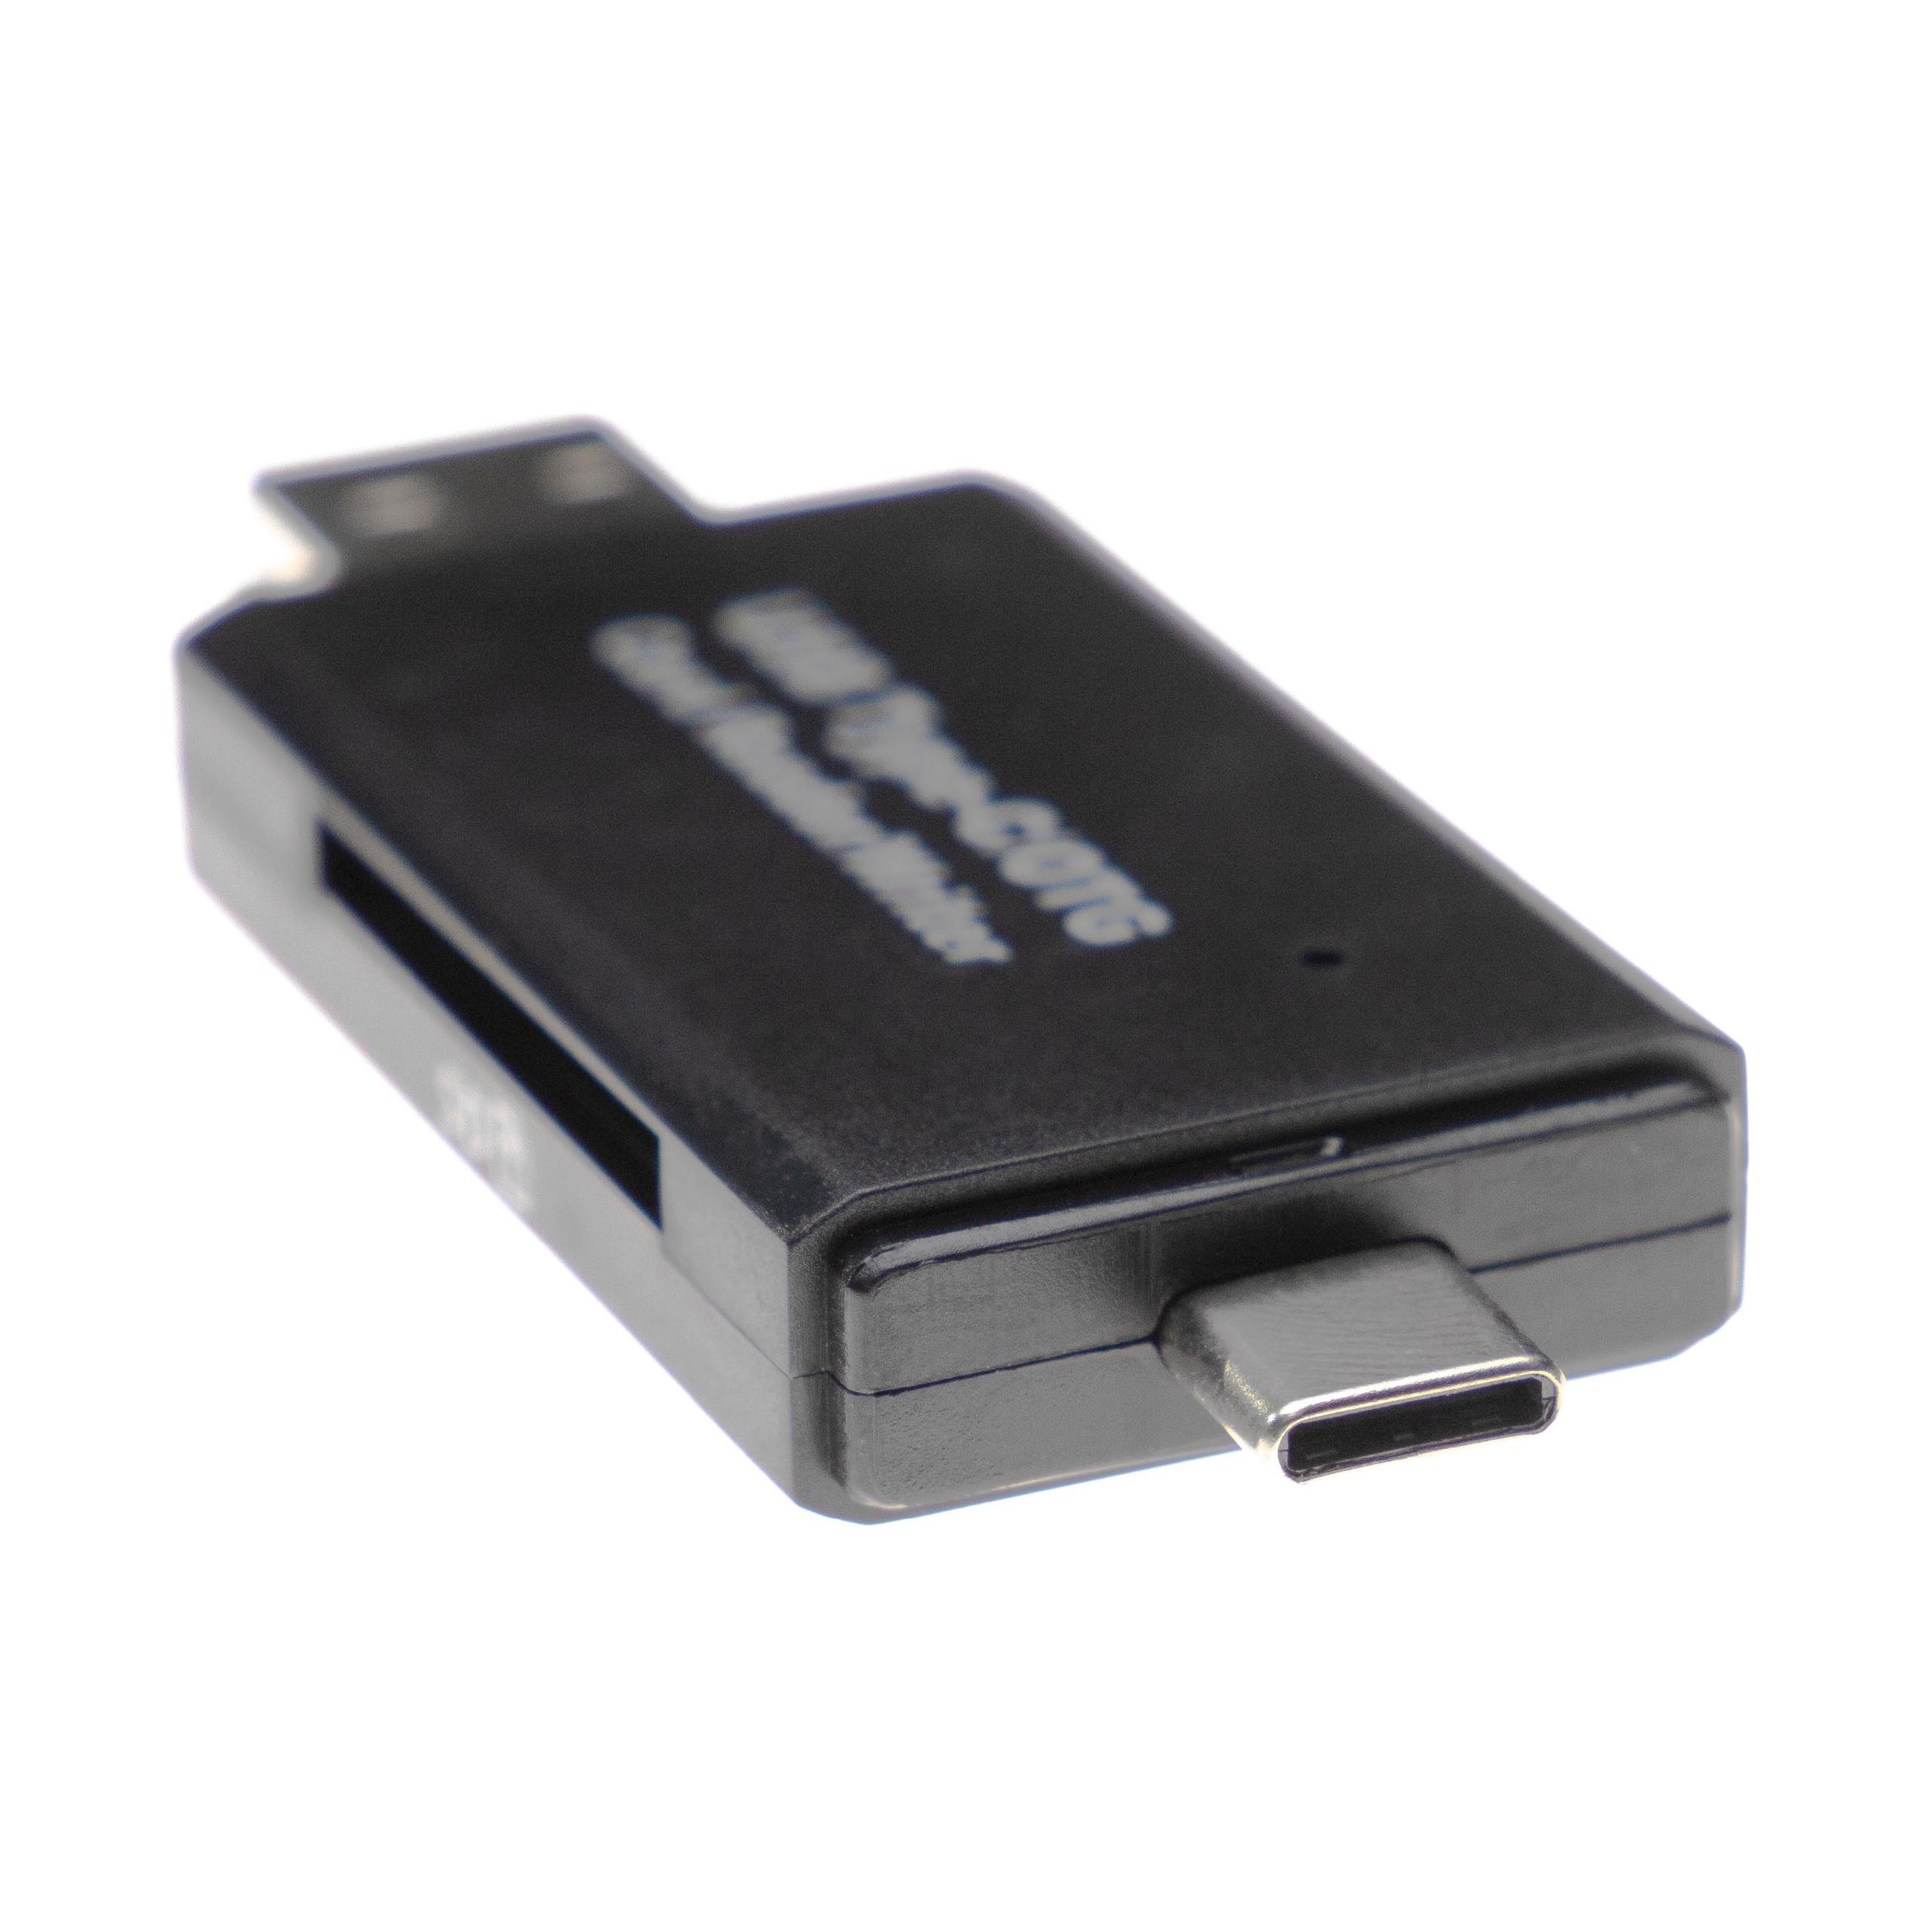 SD card reader per Micro-SD, Mini-SD schede di memoria - con cappuccio protettivo